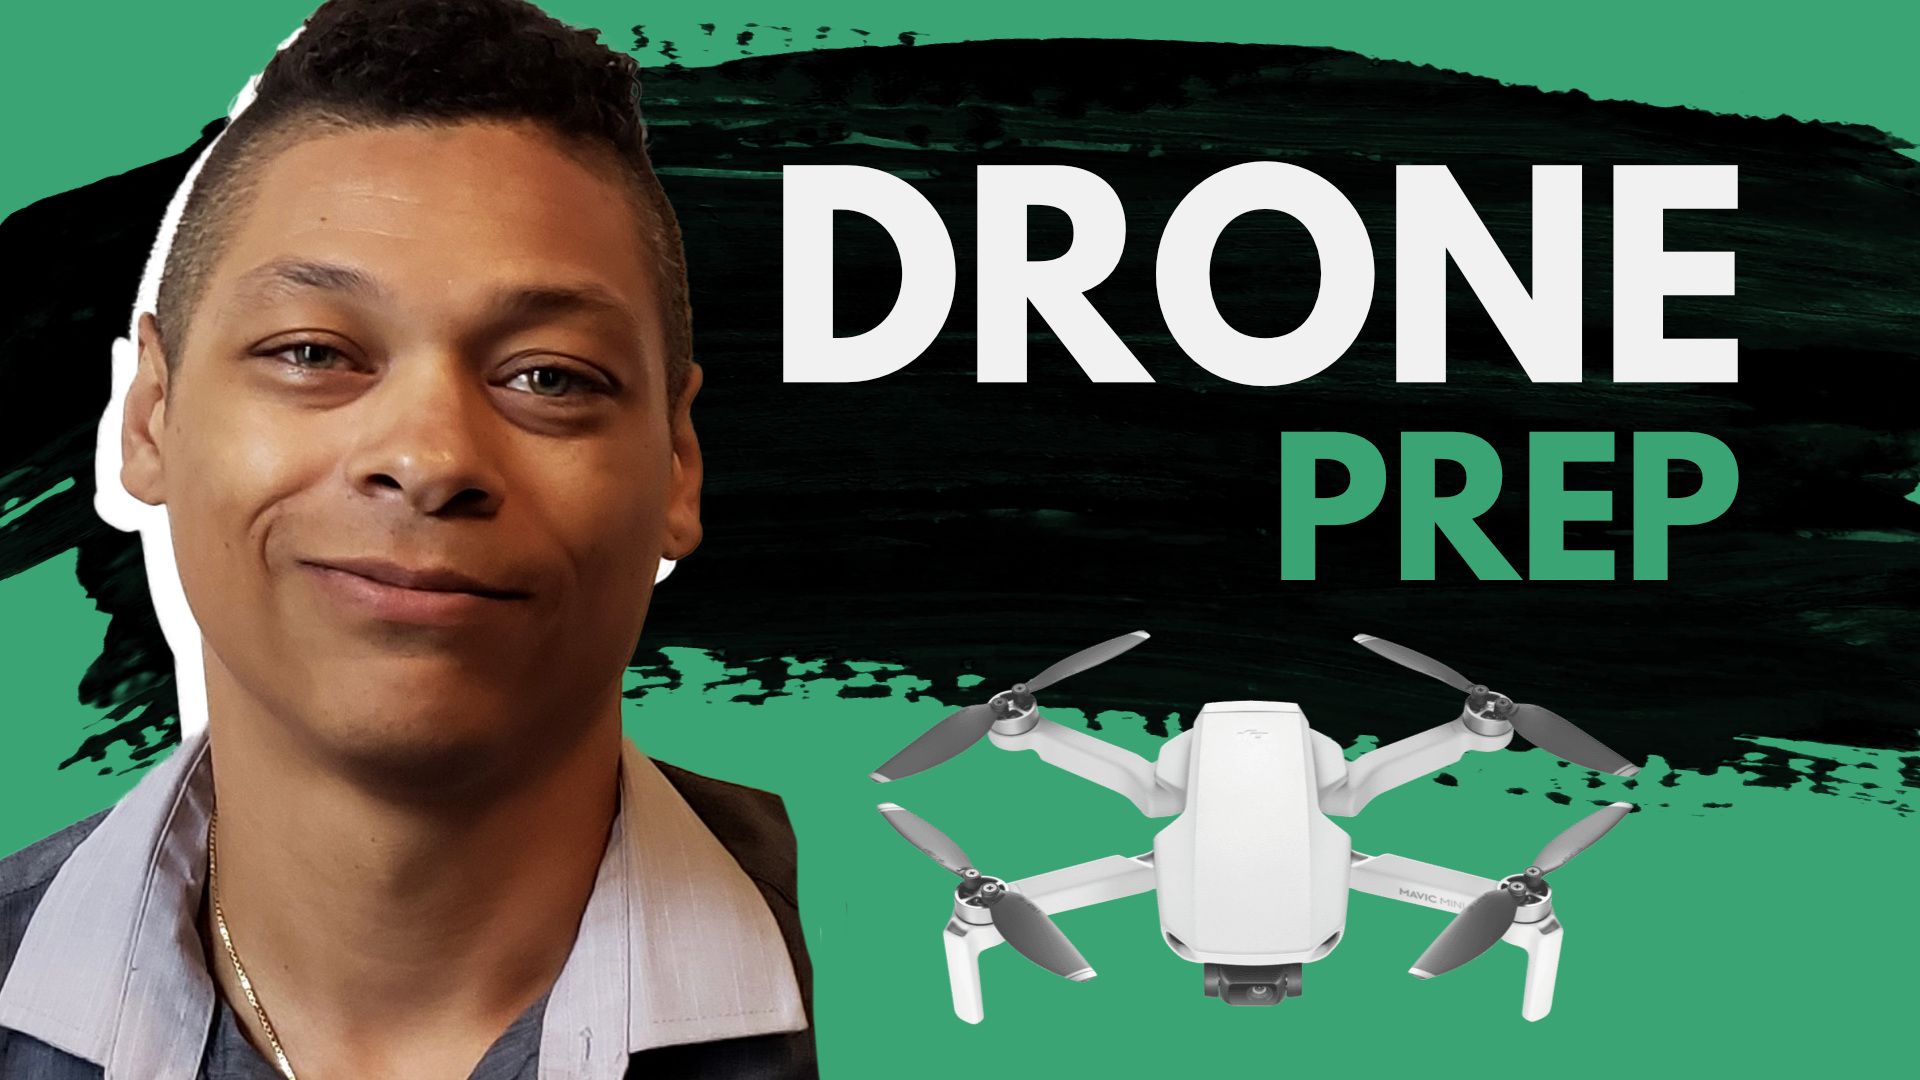 Drone Prep